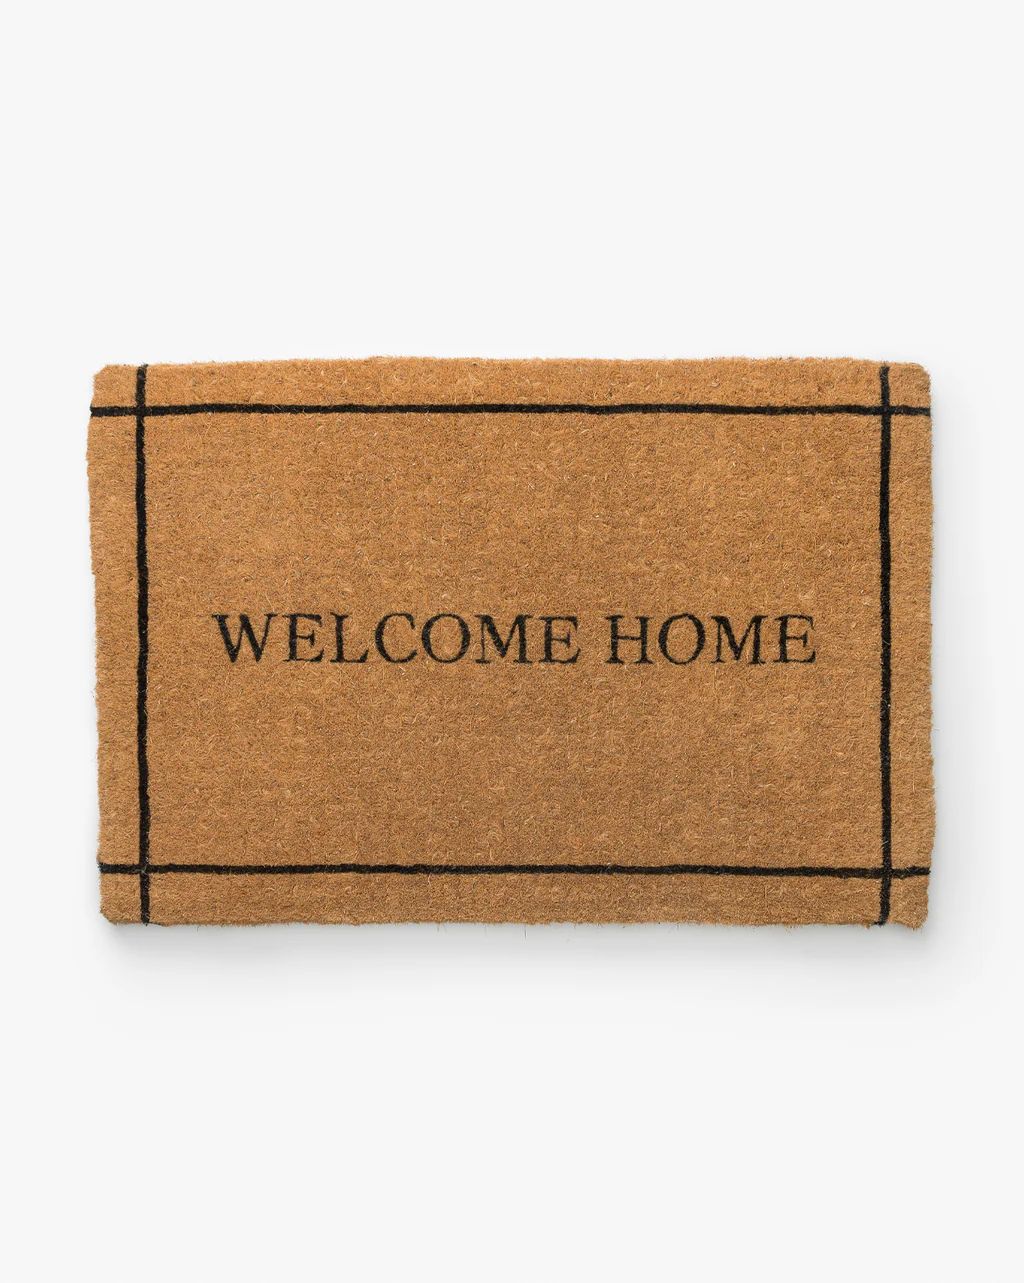 Welcome Home Doormat | McGee & Co.